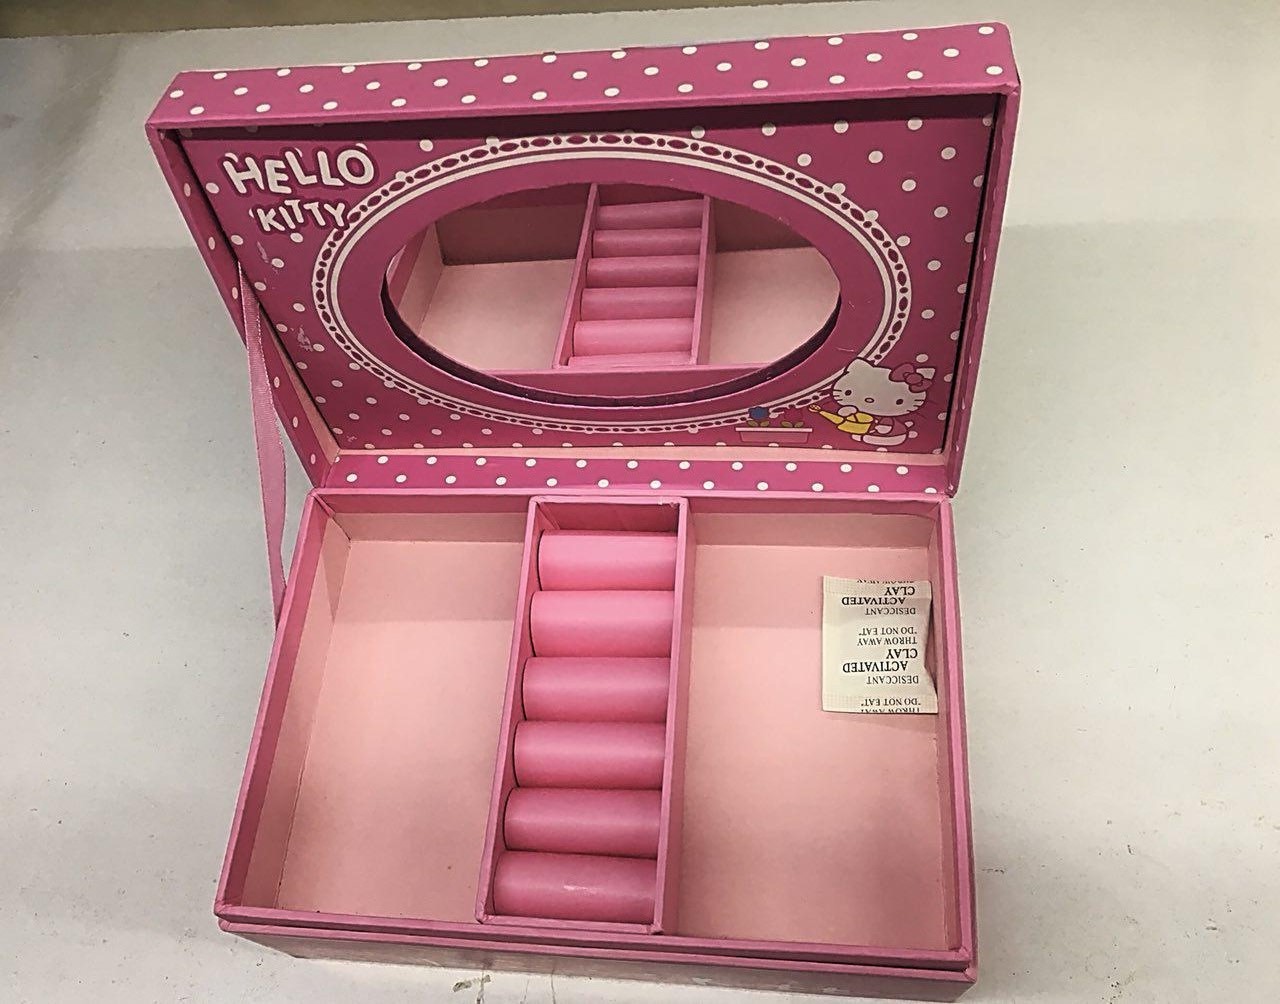 جعبه موزیکال لوازم آرایشی هلو کیتی Hello Kitty